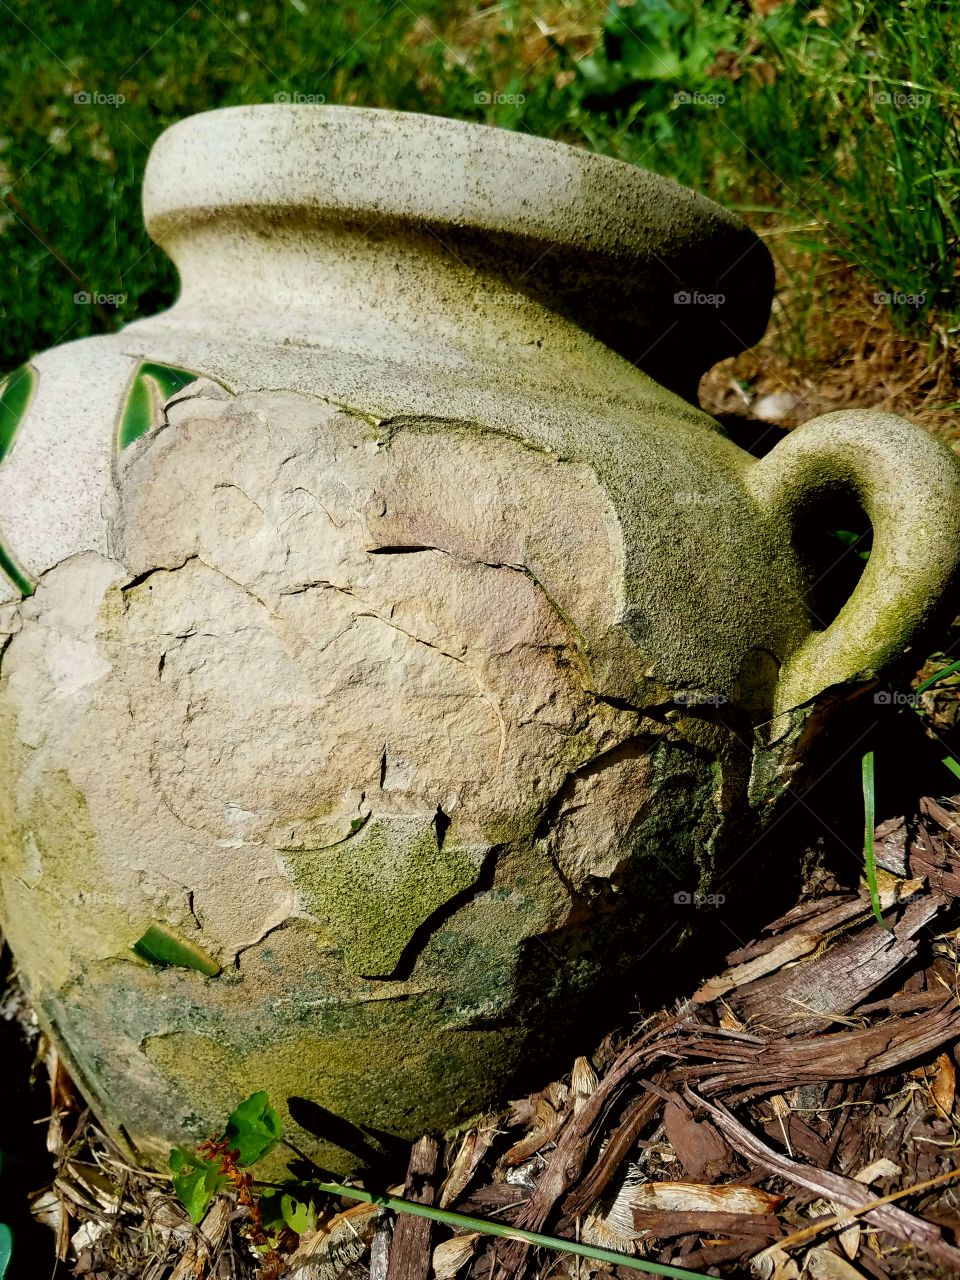 Garden Pot